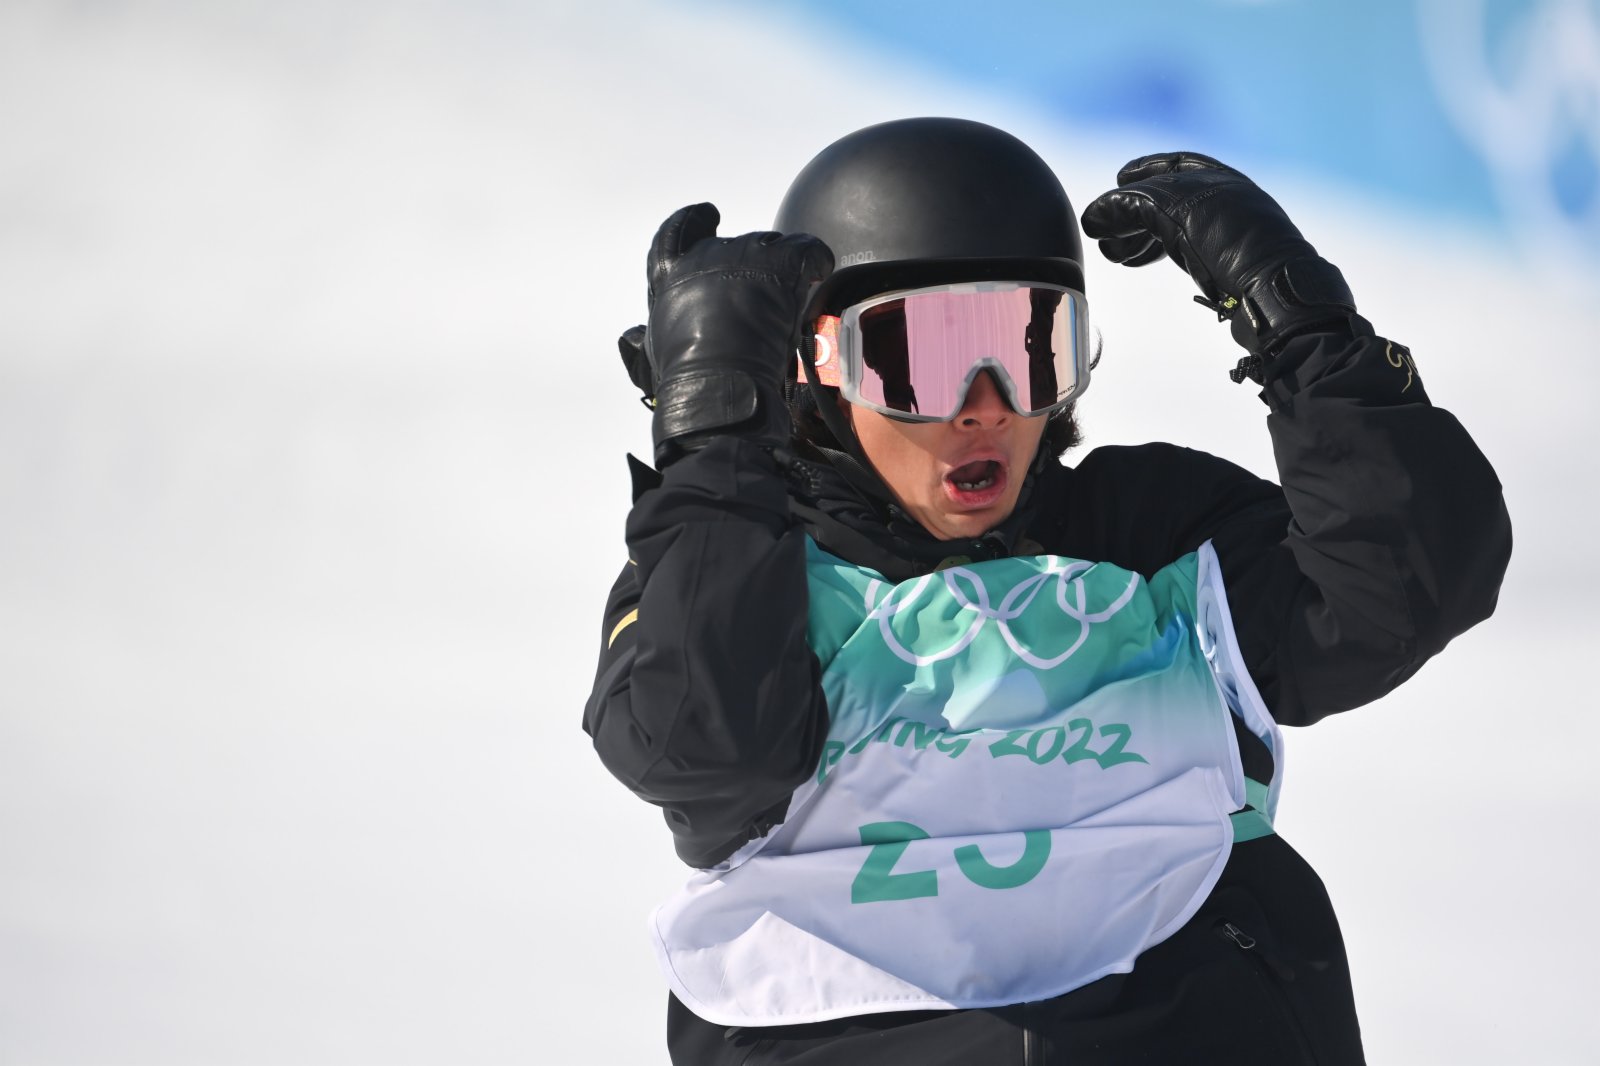 今日（15日）北京冬奧會單板滑雪男子大跳台比賽中，中國選手蘇翊鳴奪得金牌。這是中國首次奪得該項目的冬奧會金牌，刷新冬奧會史上最佳戰績。圖為中國選手蘇翊鳴在比賽中。（新華社）